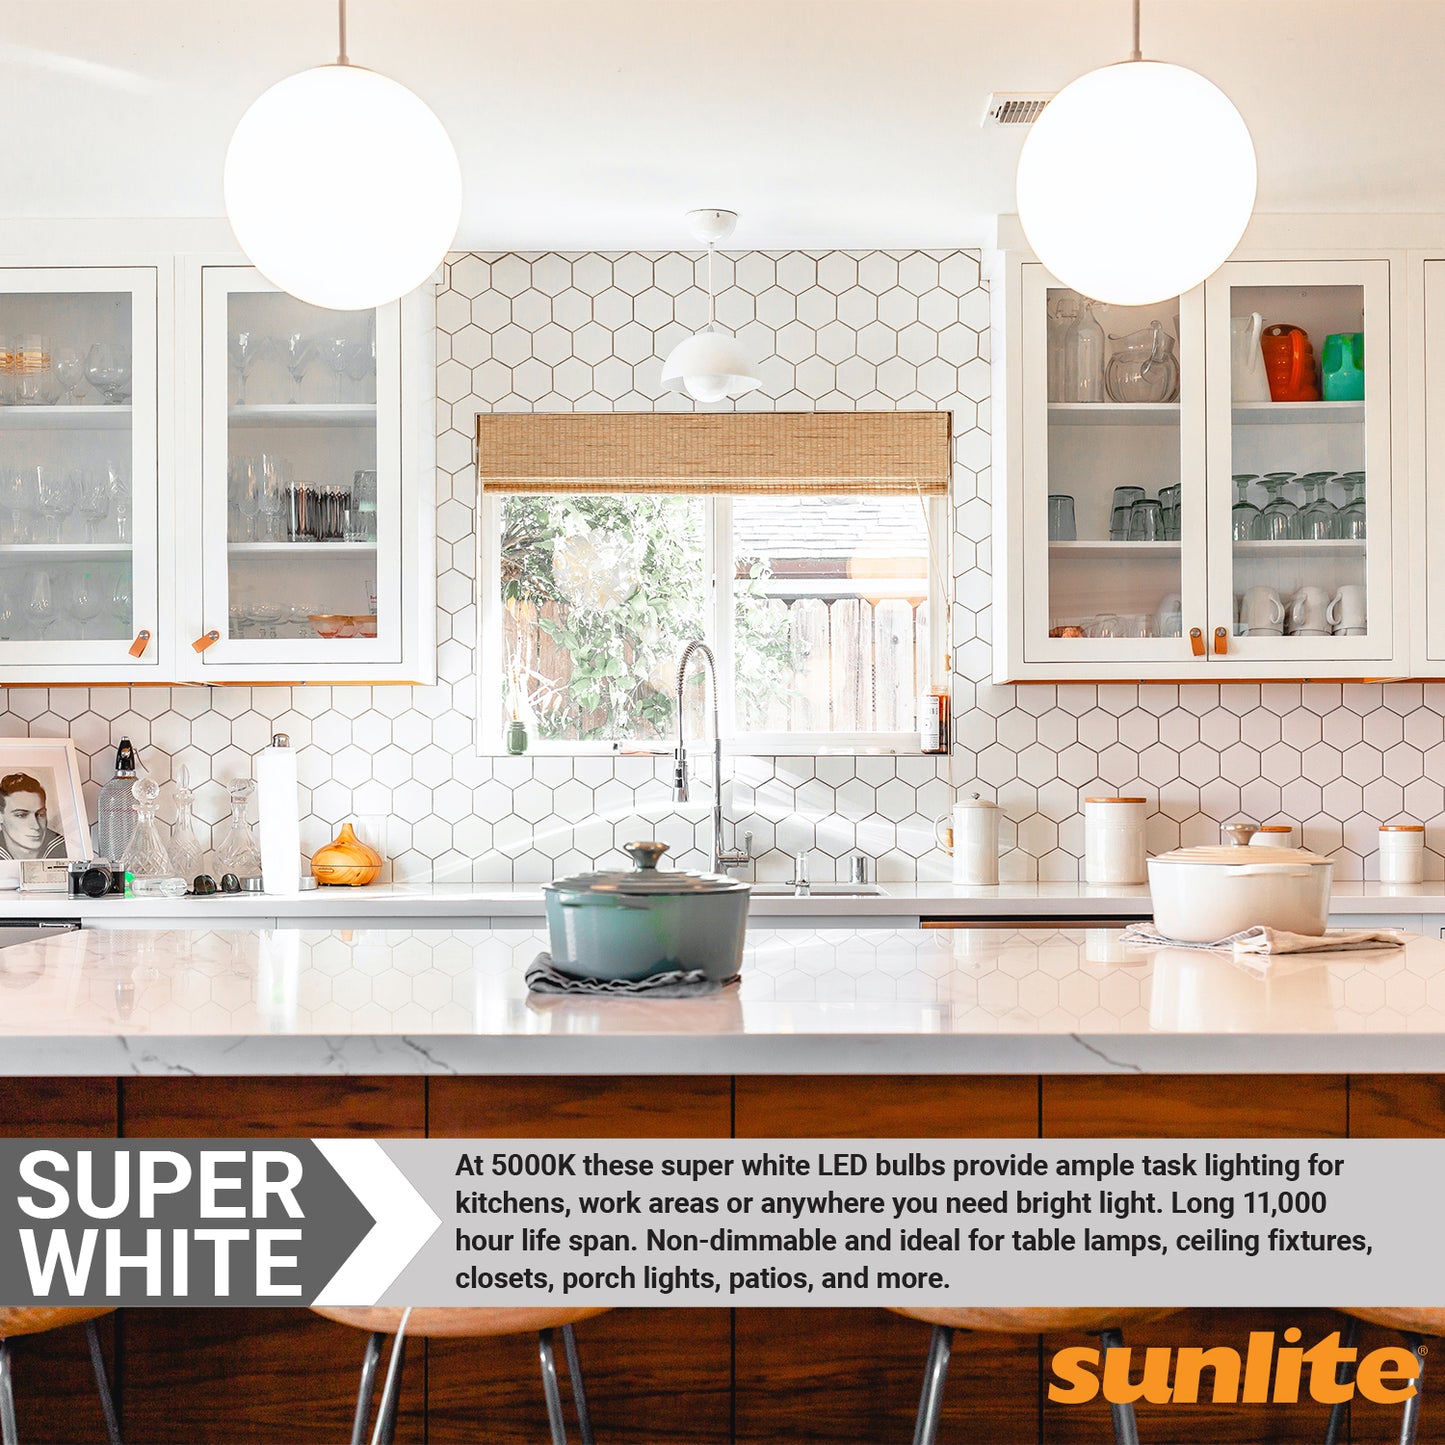 3 Pack Sunlite A19 LED Bulbs, 9 Watt (60 Watt Equivalent), 800 Lumens, Medium (E26) Base, 5000K Super White, UL Listed